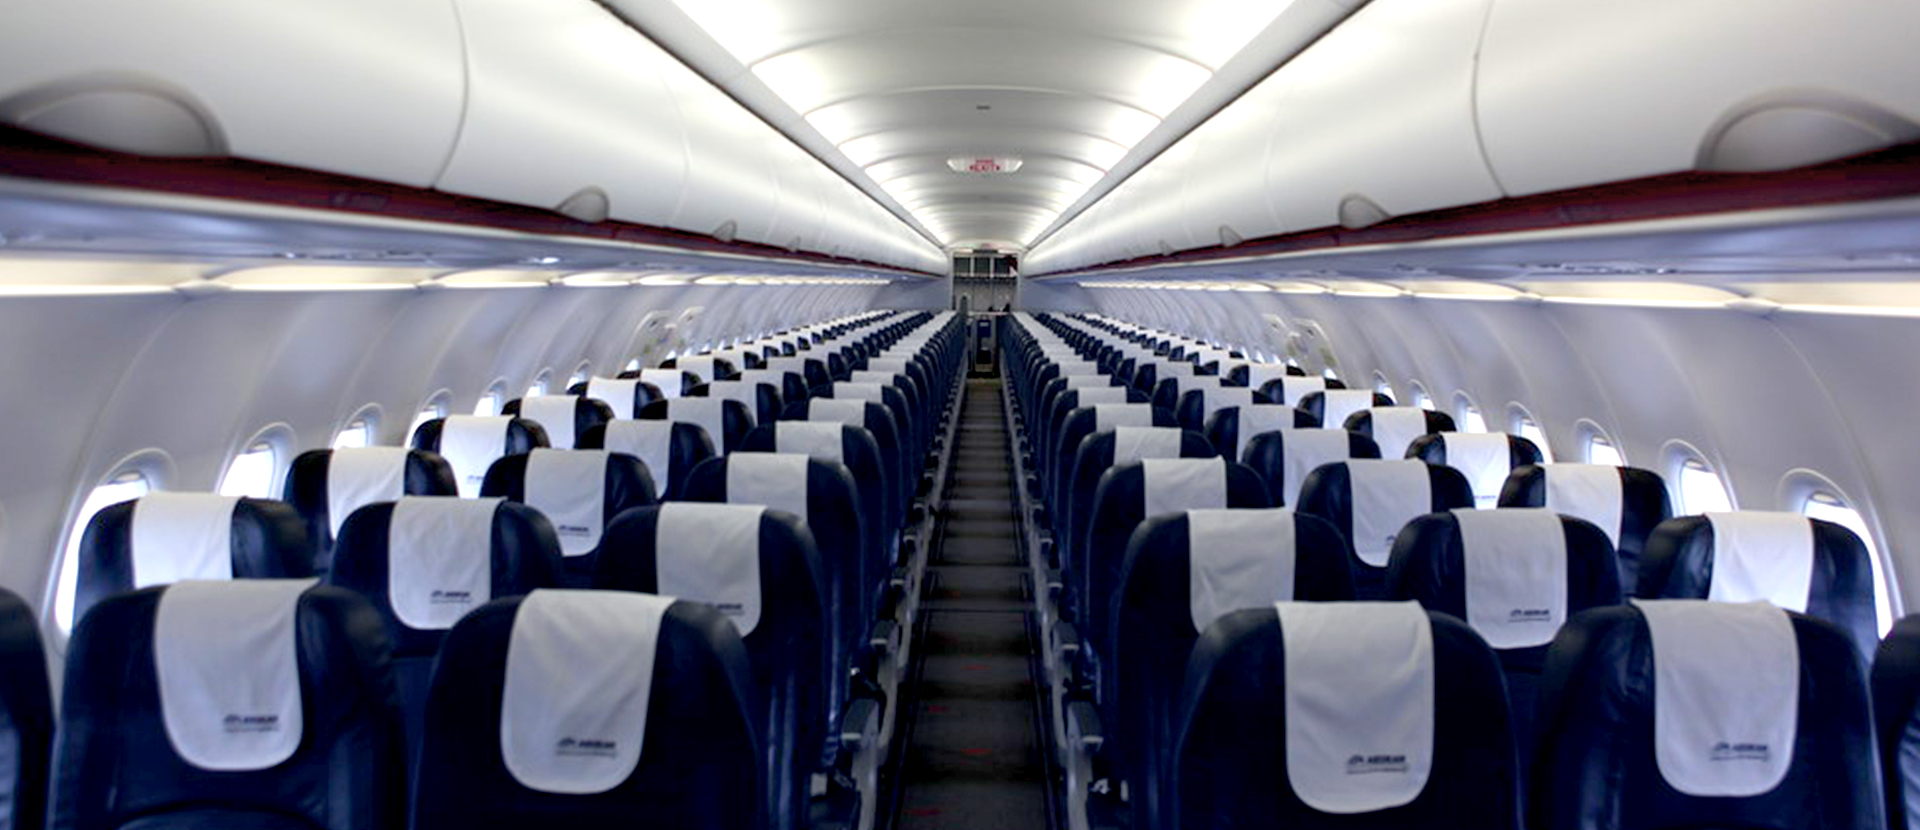 Αυτό το ήξερες; – Γιατί λείπει η σειρά καθισμάτων «13» από τα αεροπλάνα;